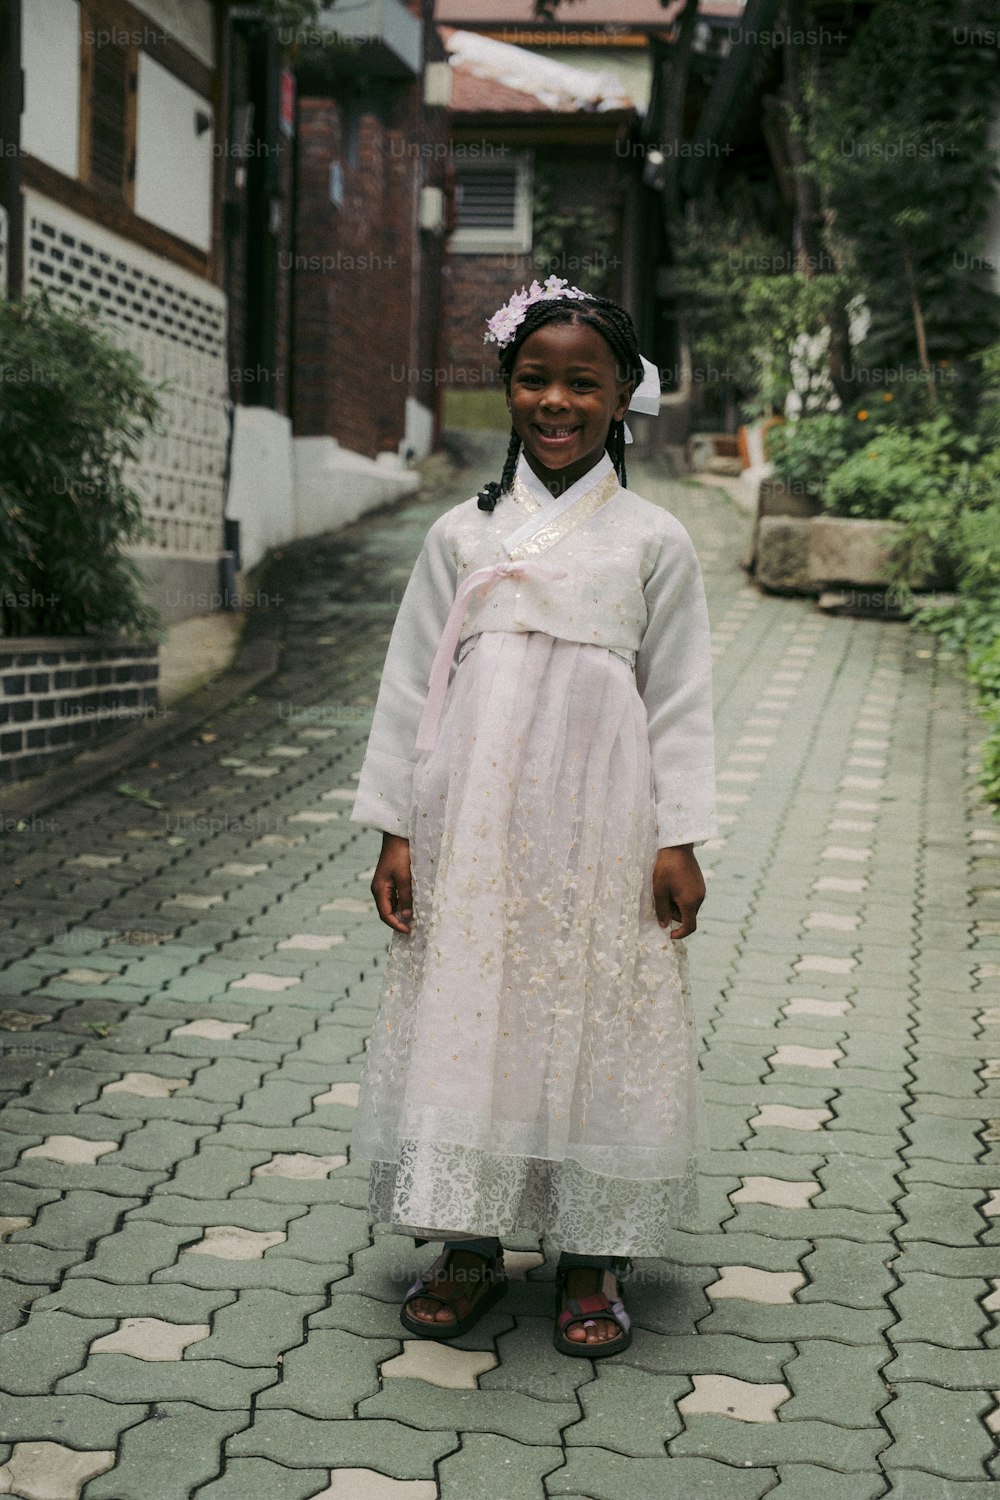 Une jeune fille en robe blanche debout dans une rue pavée